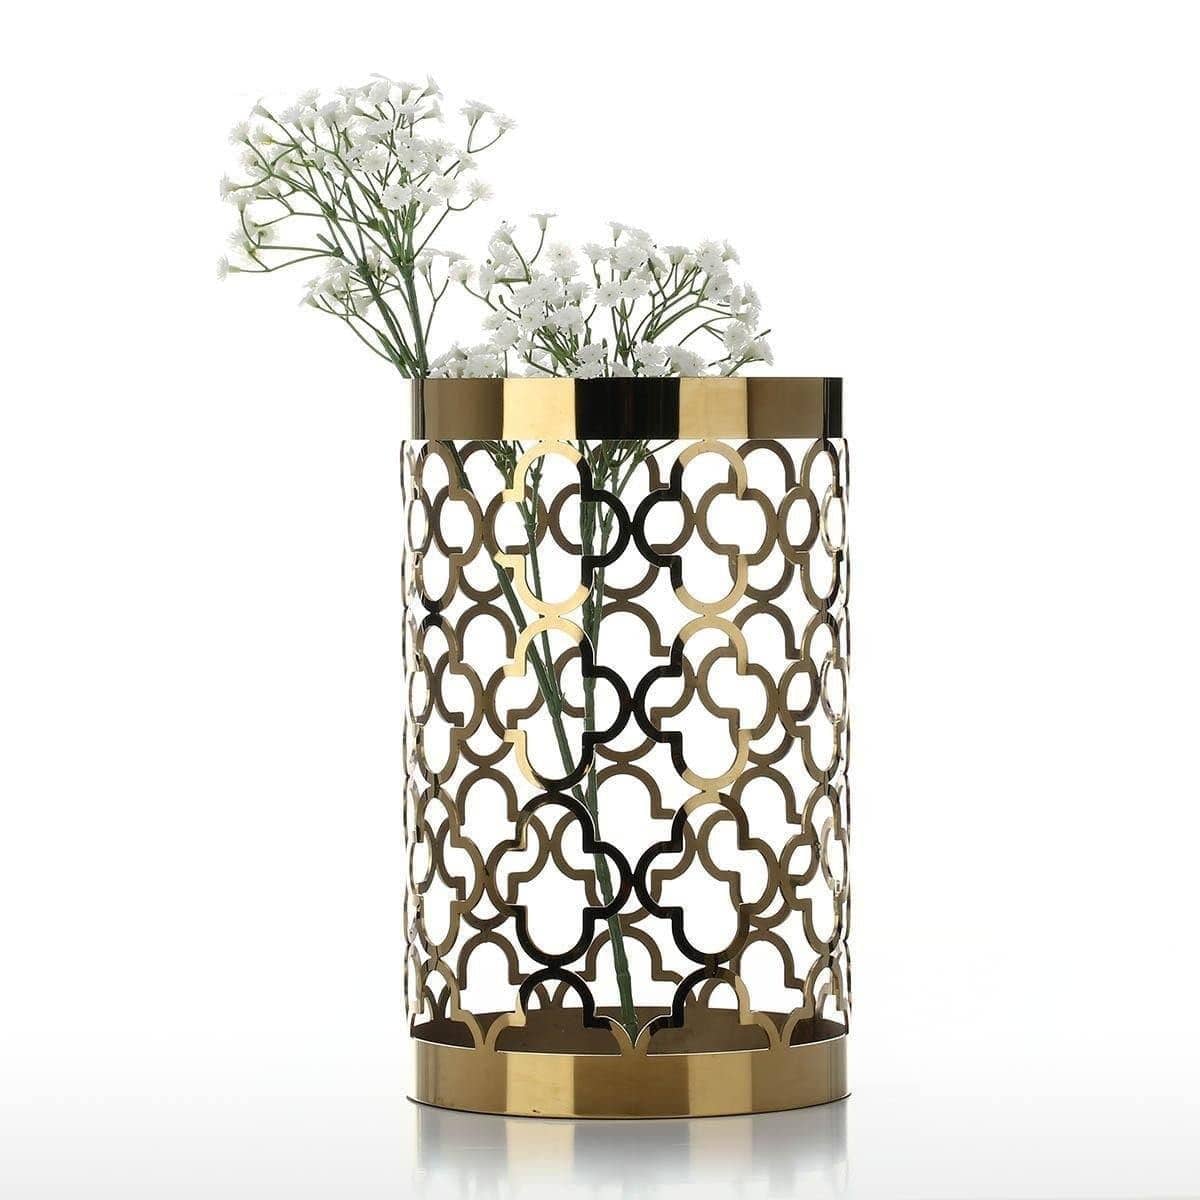 Hollow Bloom Flower Vase: Elegant and Modern Home Decor for Flower Lovers